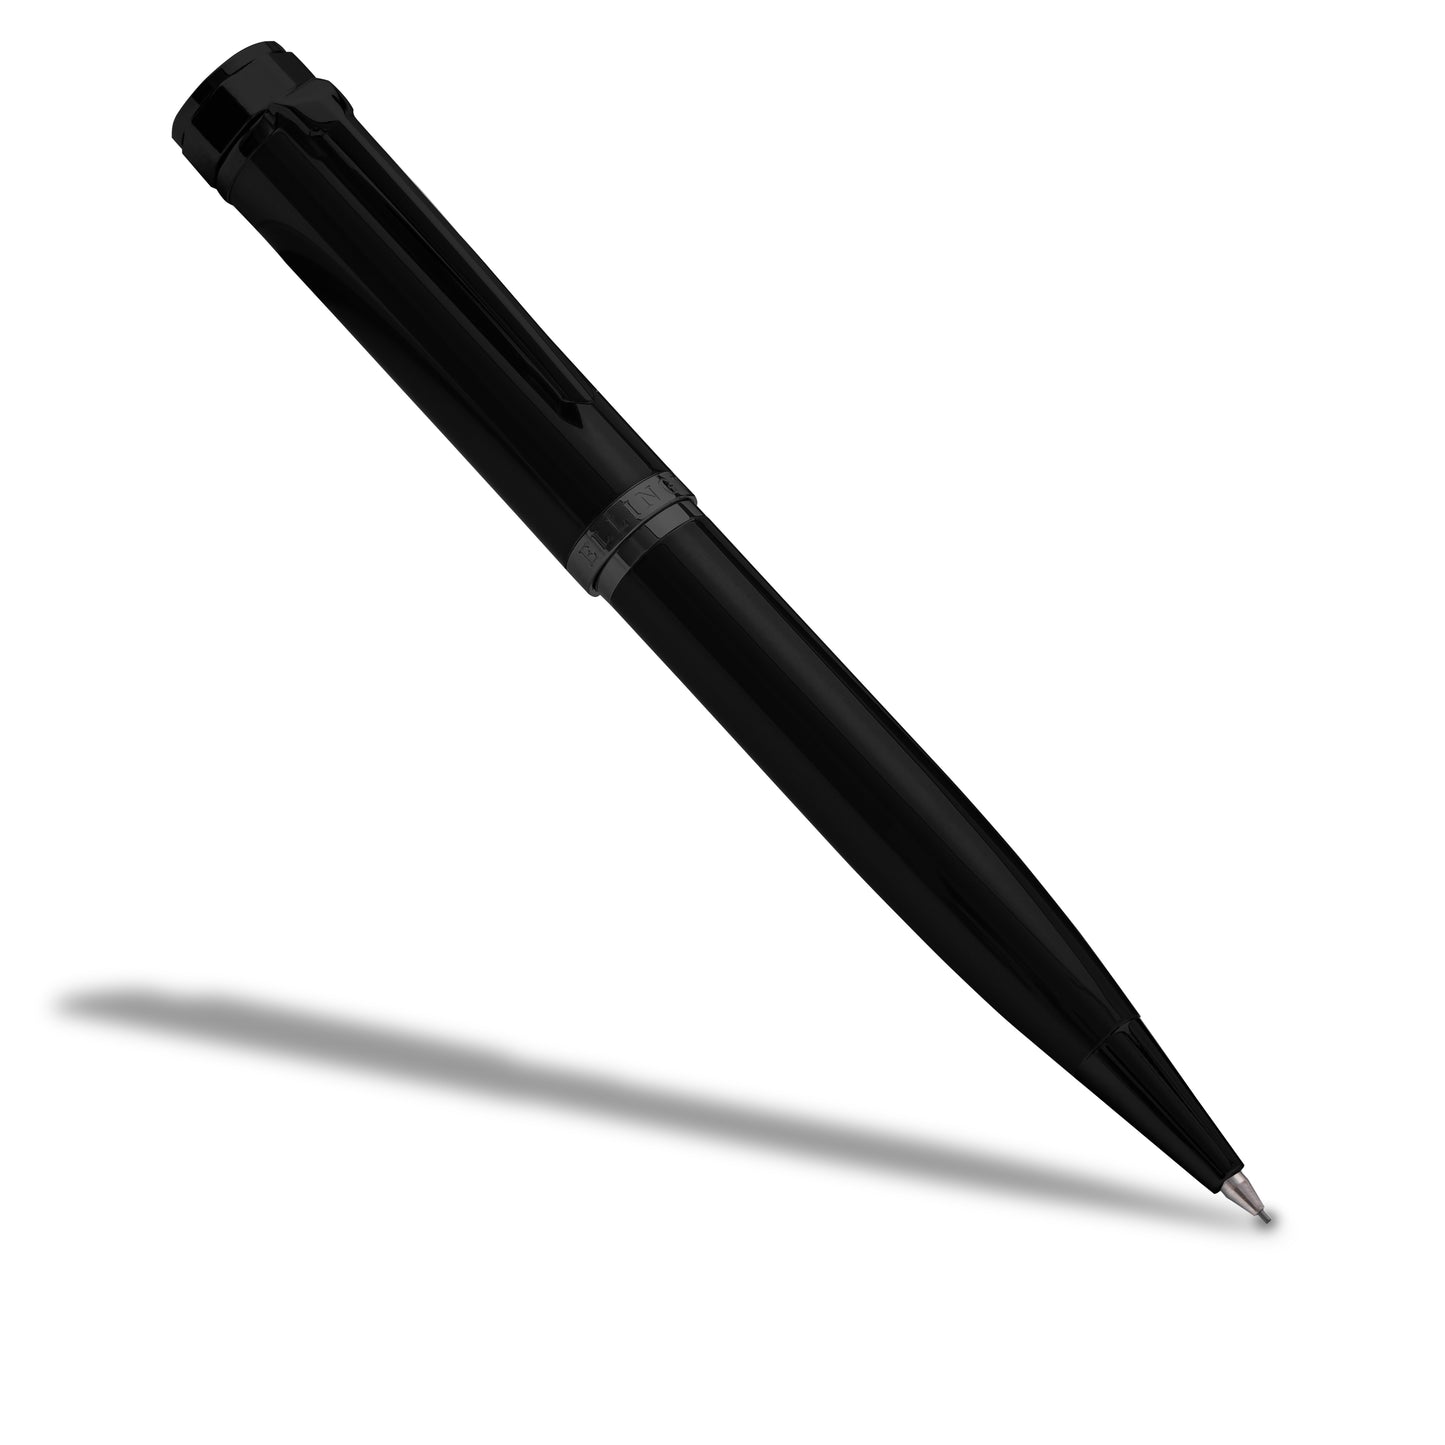 Shelt's New Bending Pencil Blank - $1.65 